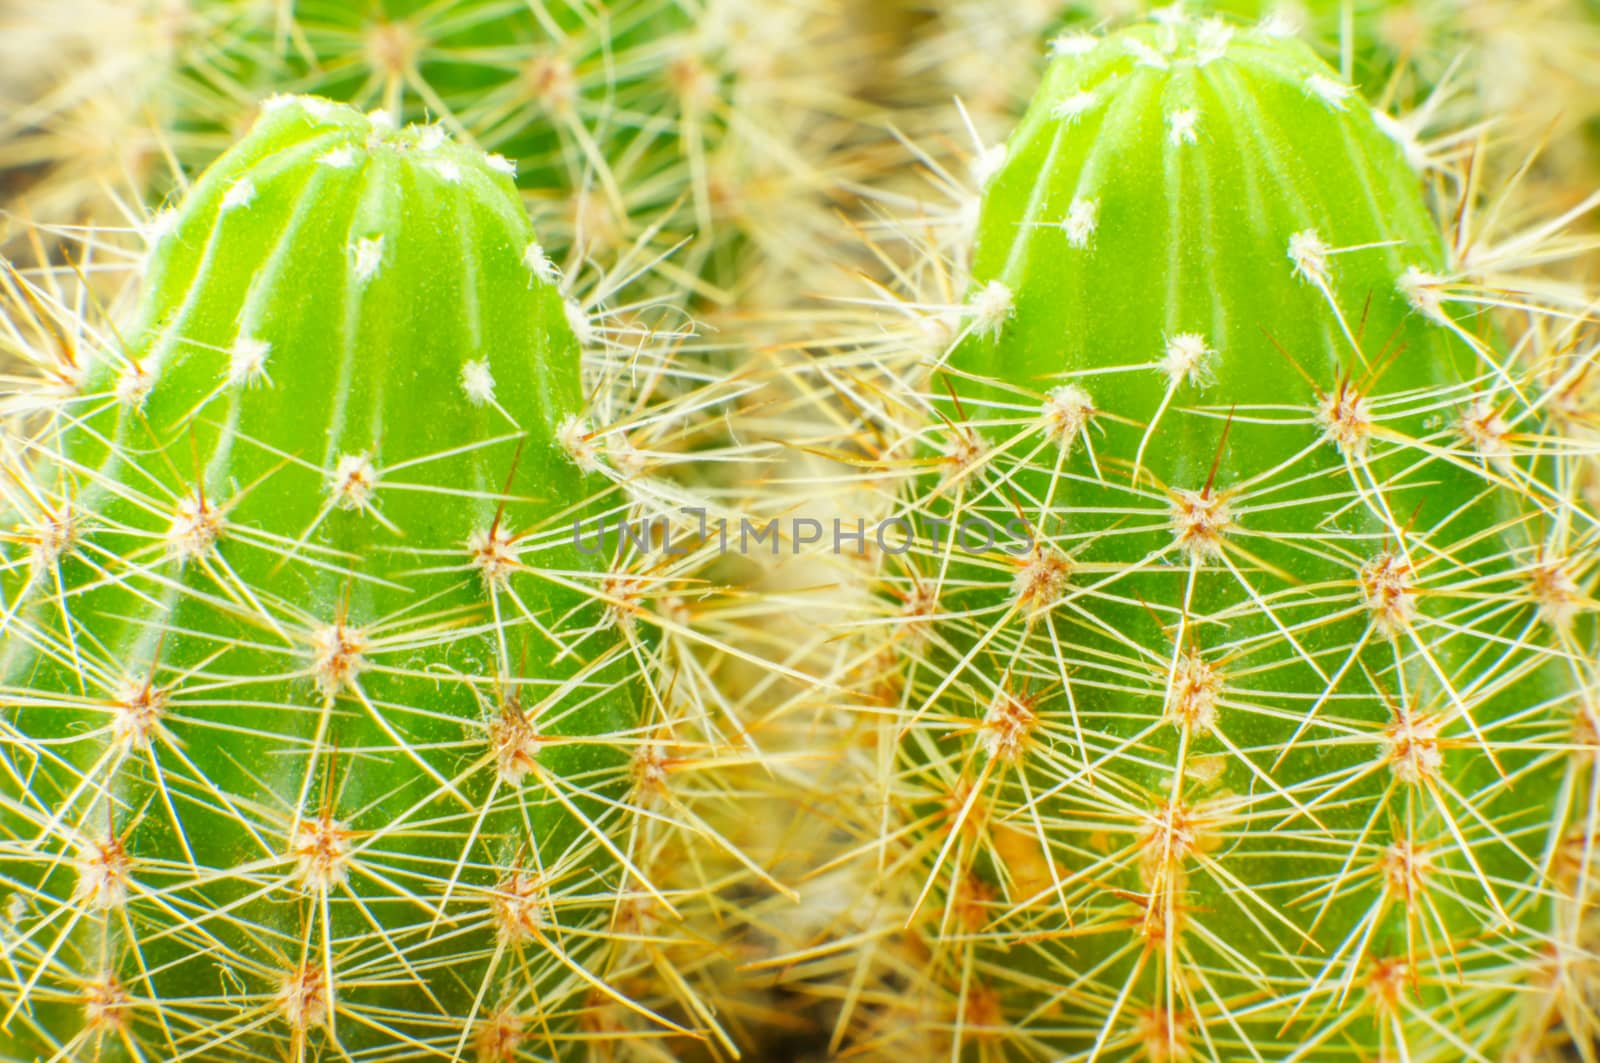 cactus close up by serhii_lohvyniuk